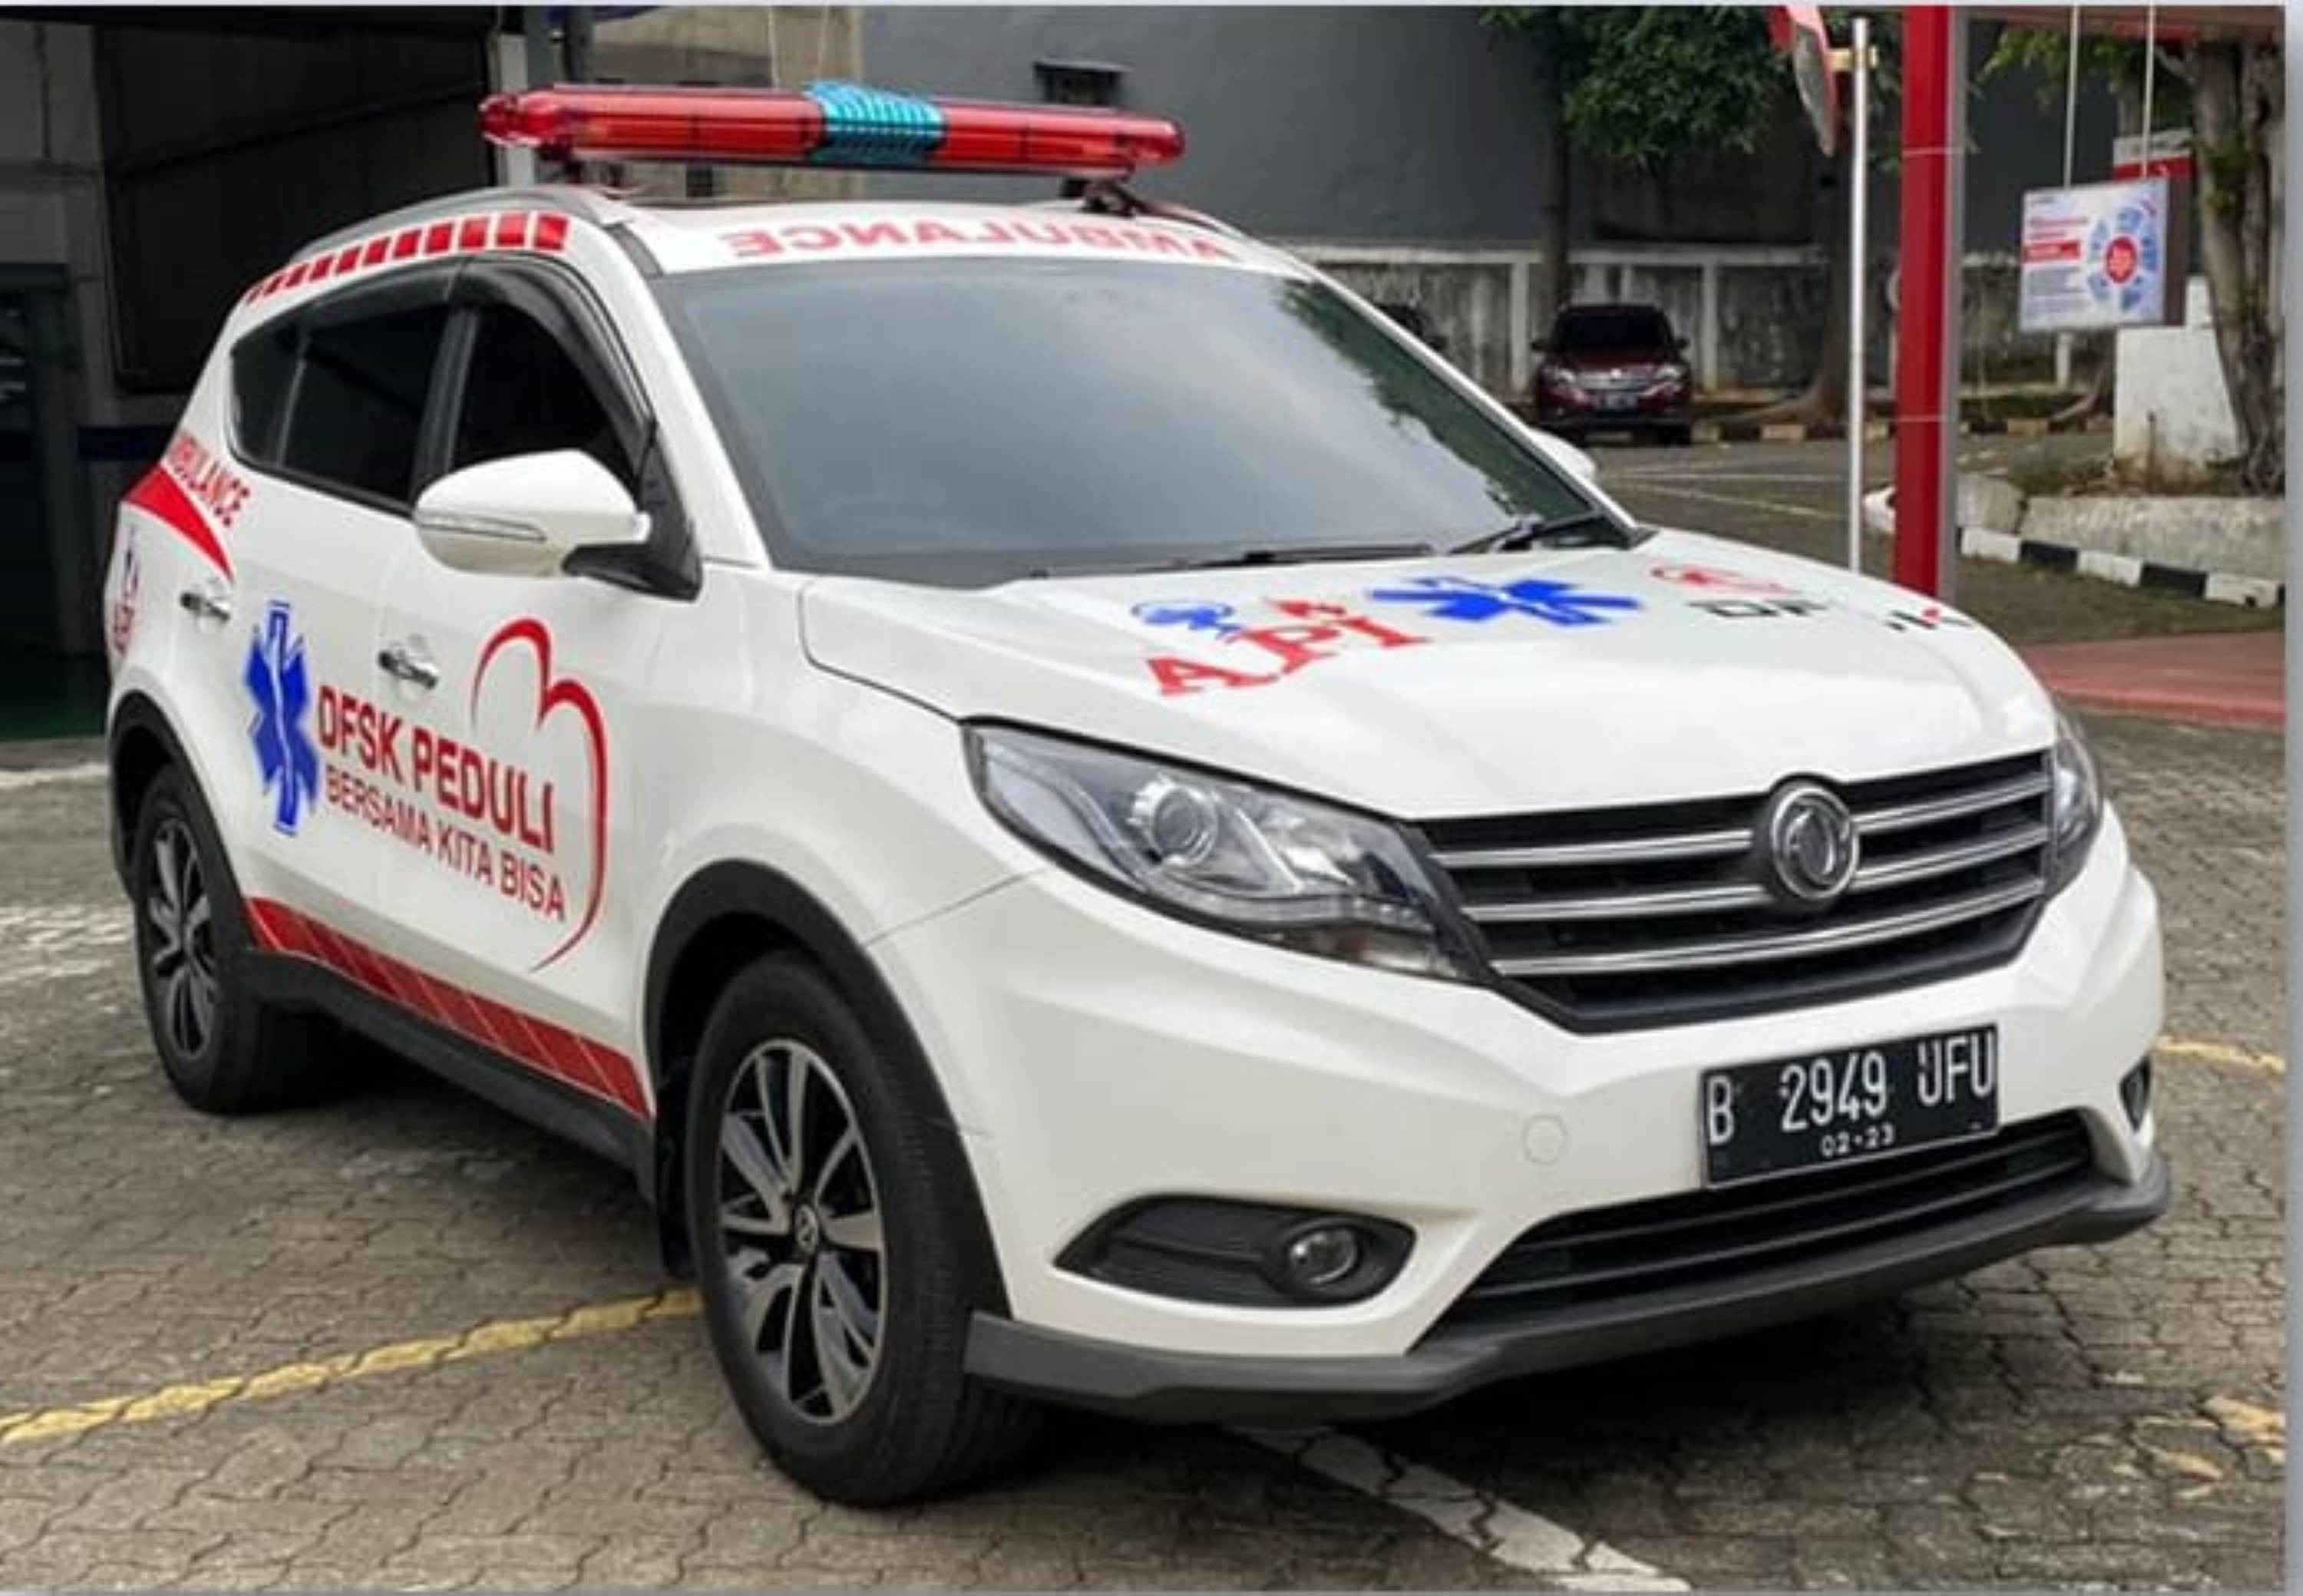 DFSK Tawarkan Ambulans VIP untuk Konsumen Indonesia - [en]